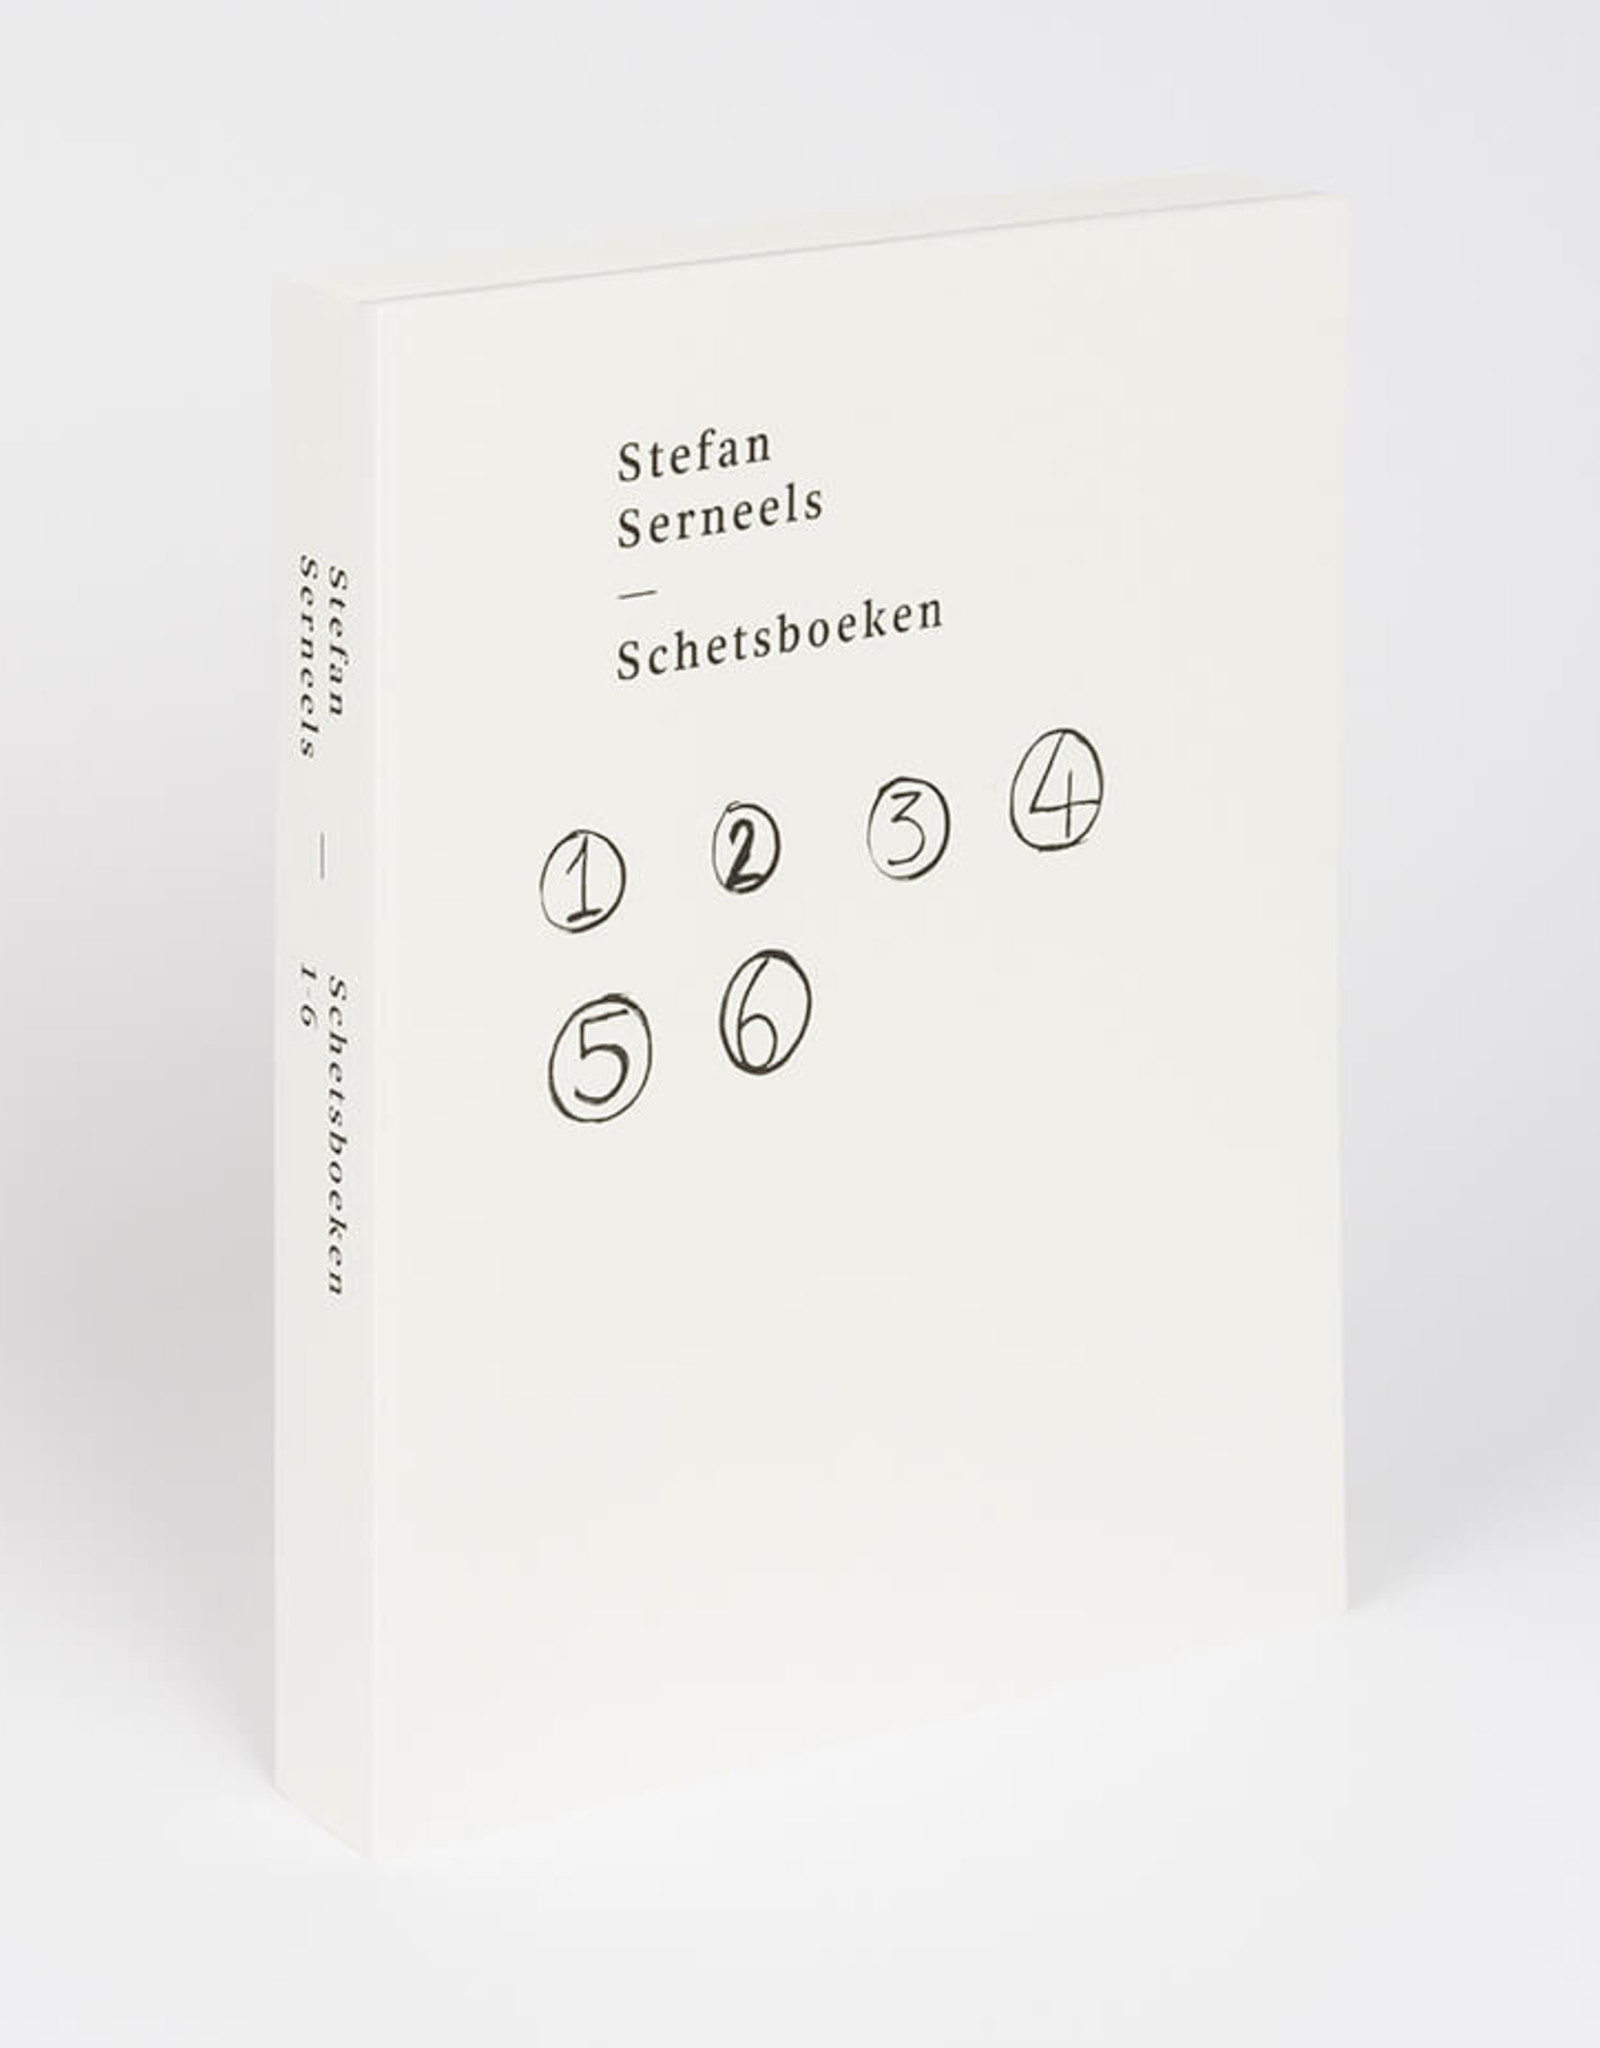 Stefan Serneels - Schetsboeken 1-6